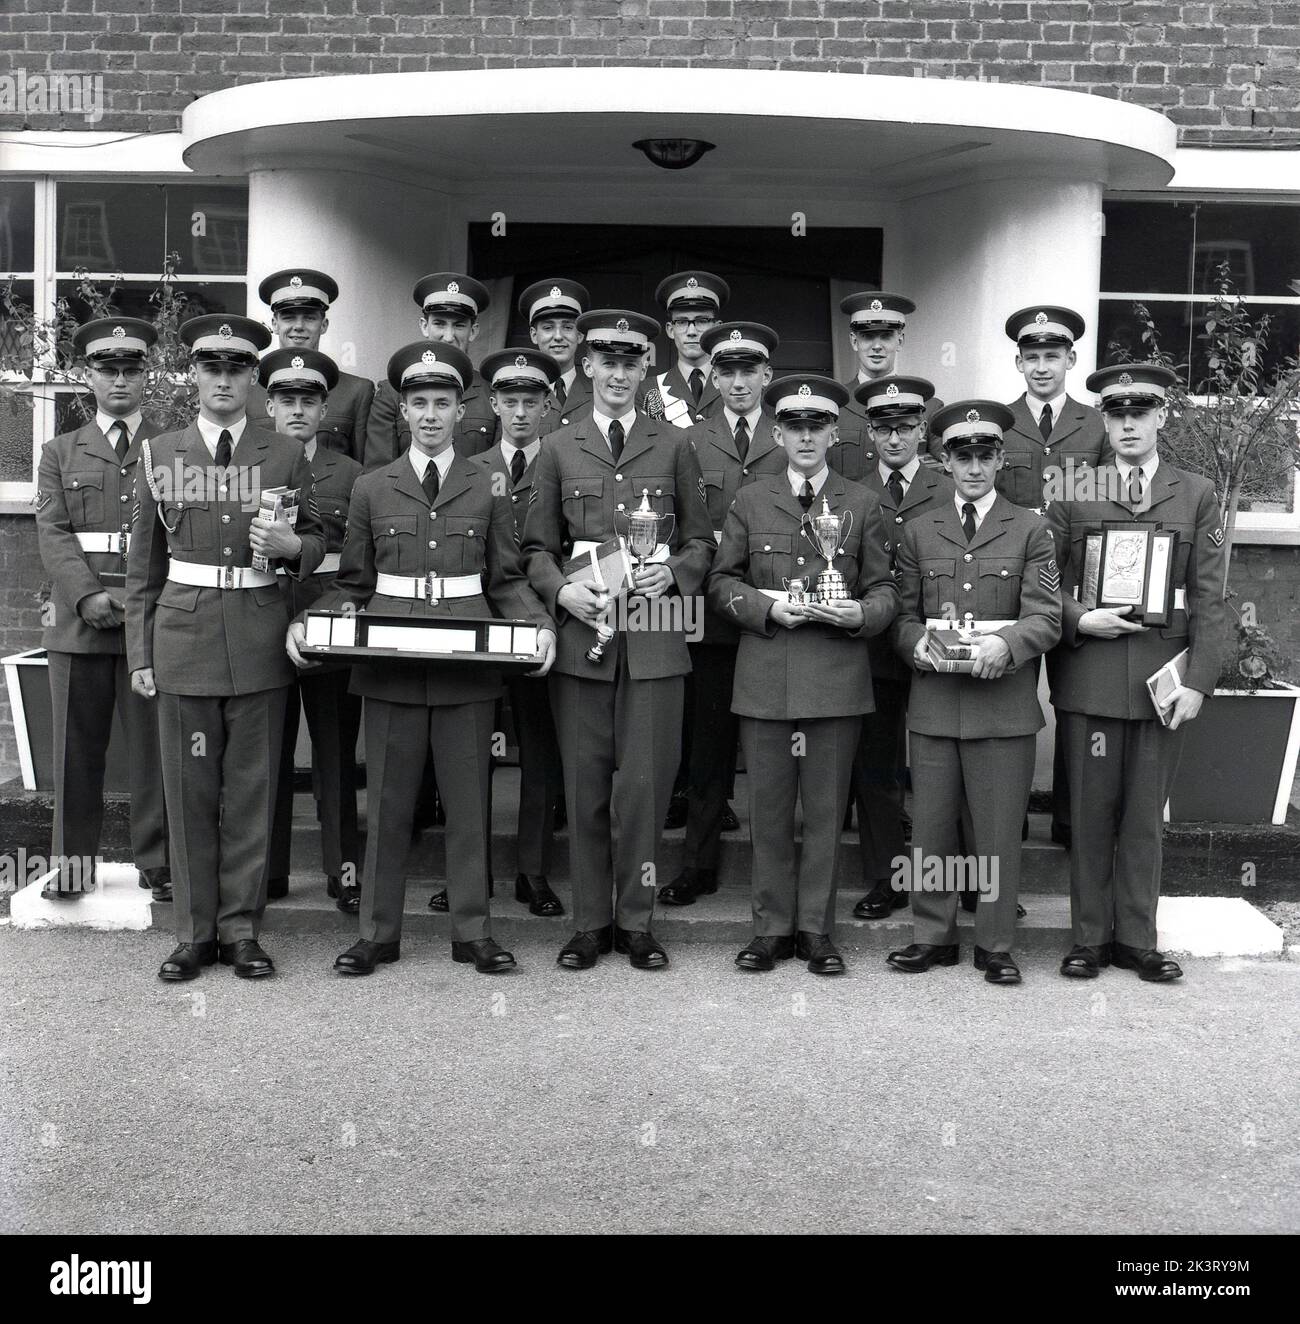 1964, historisch, in ihrer Uniform stehend, stehen neu graduierte RAF-Auszubildende für ein Gruppenfoto im RAF Halton, Bucks, England, Großbritannien. Die RAF Halton war von 1919 bis 1993 Sitz der No 1 School of Technical Training, der Flugschule der Royal Air Force. Stockfoto